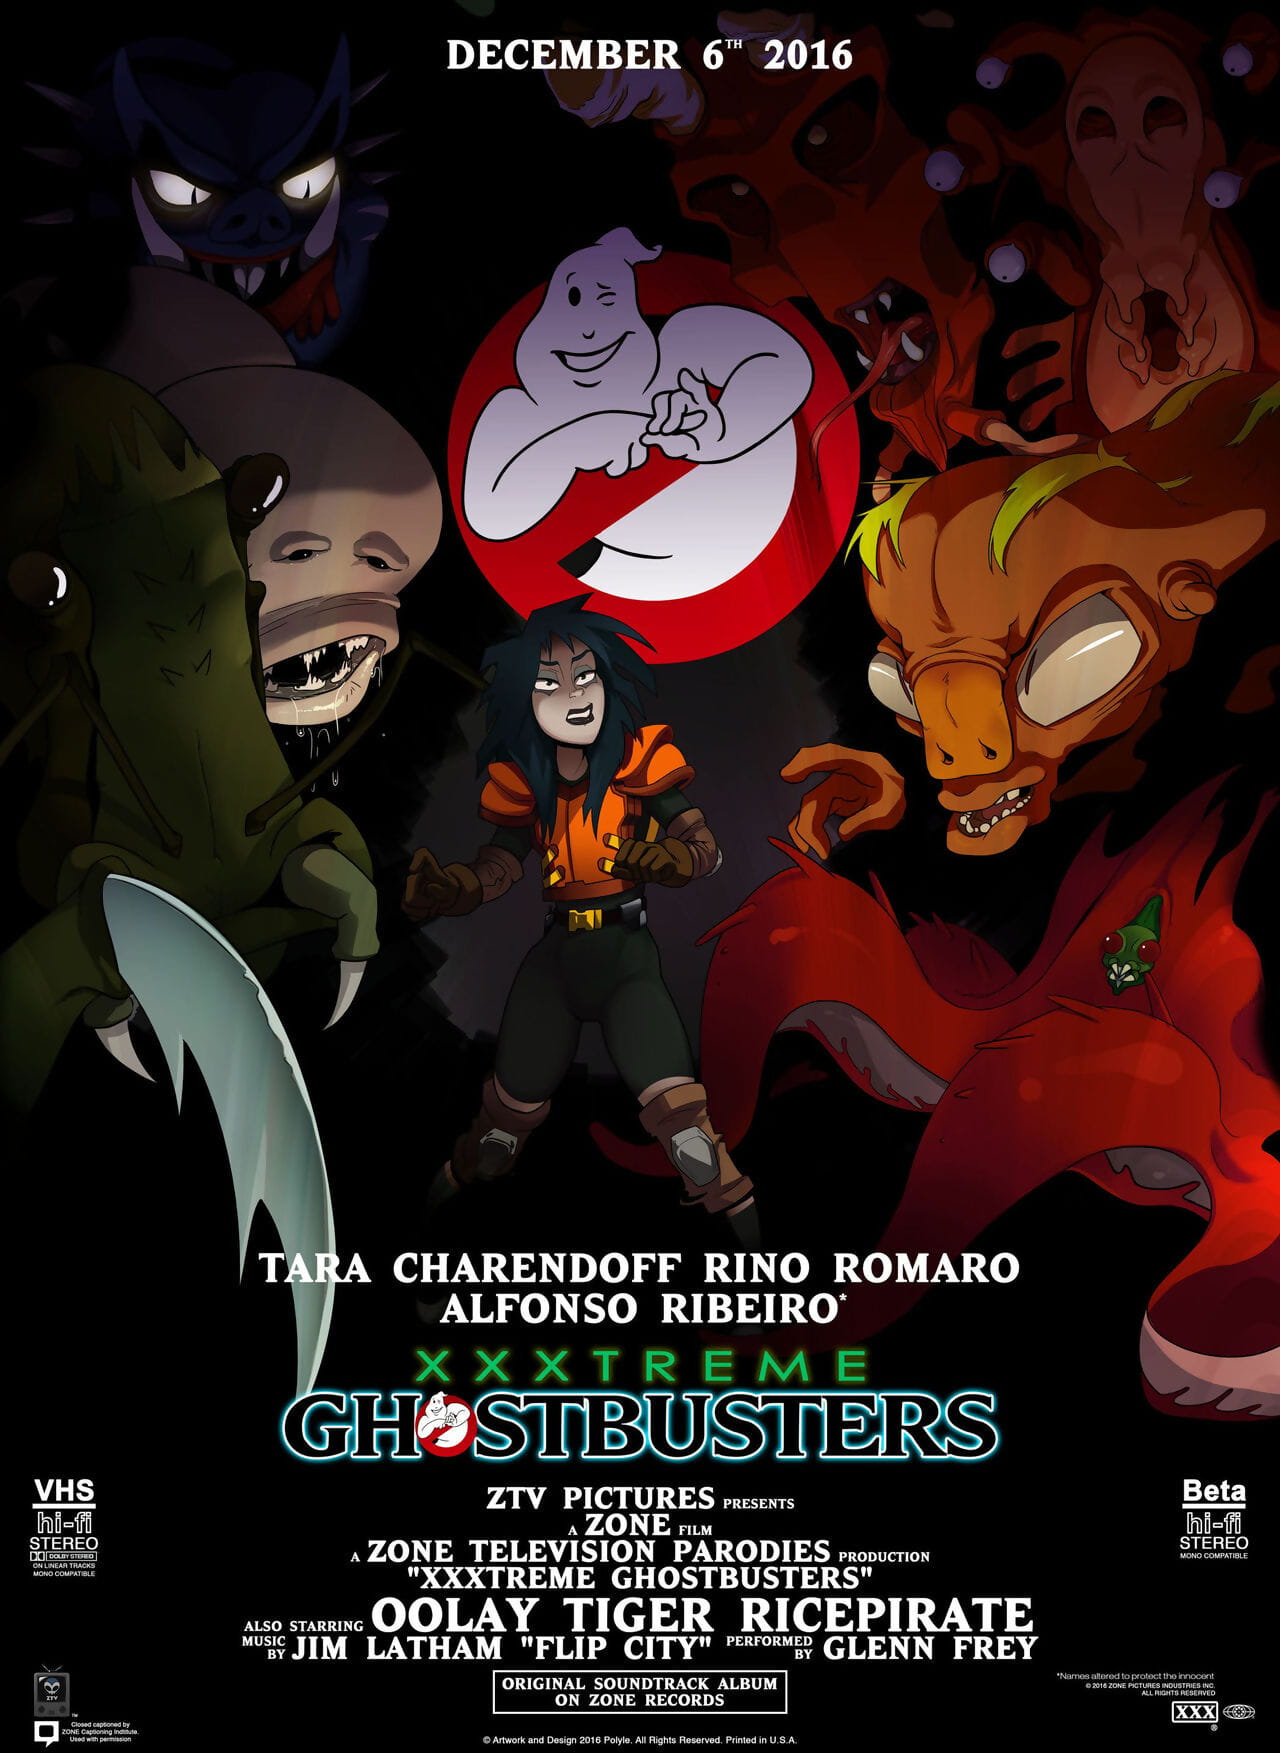 xxxtreme ghostbusters Parodie animation gifs und screencaps page 1